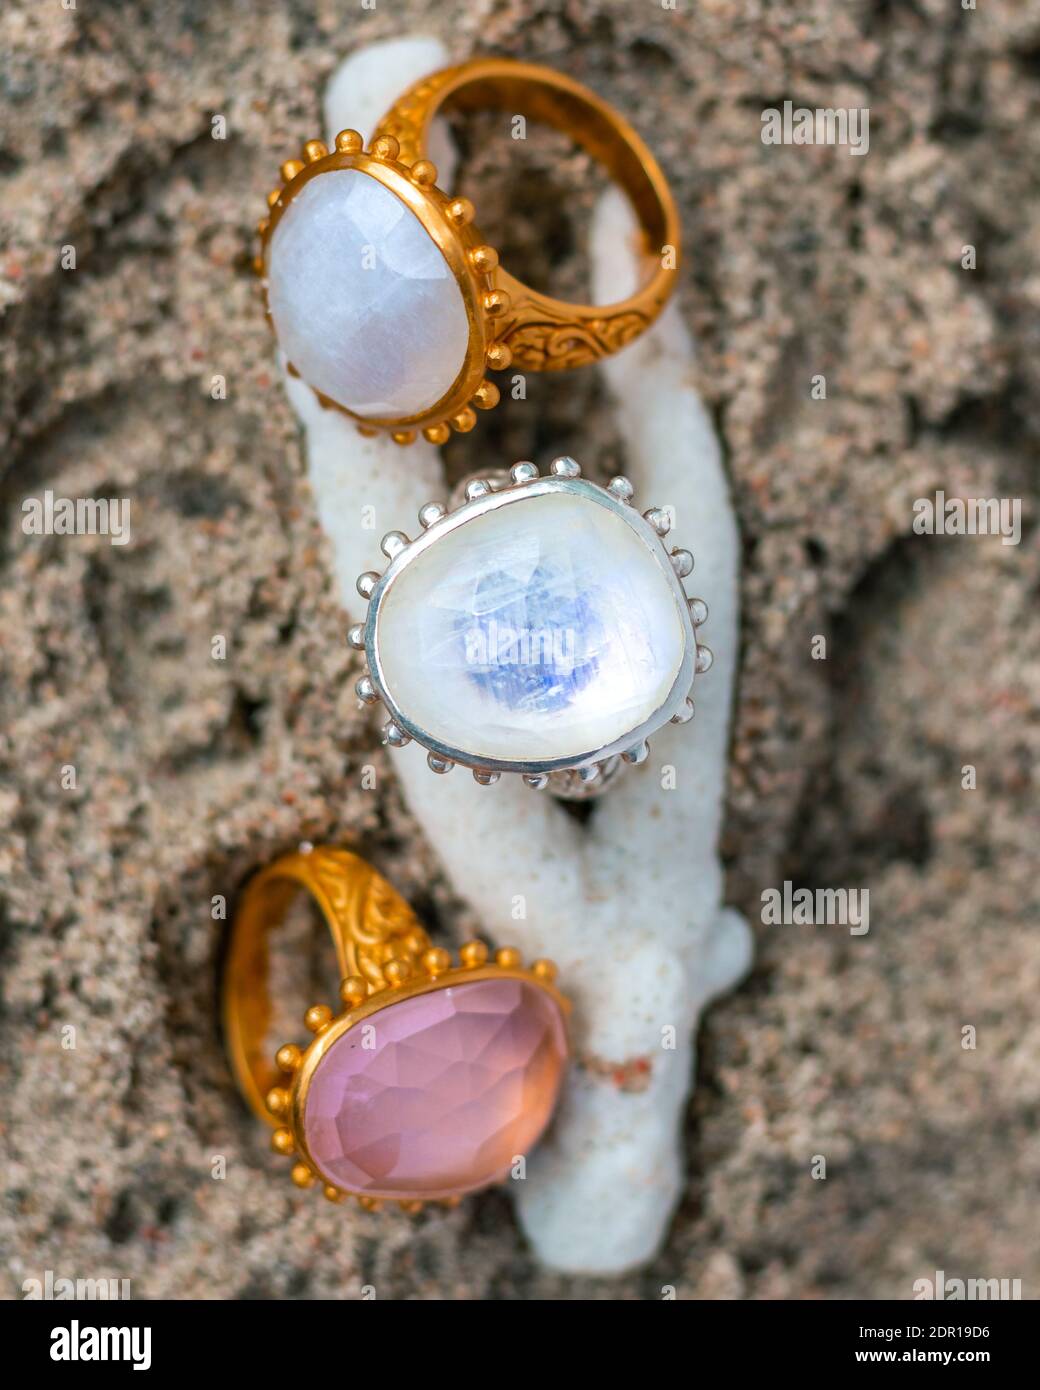 Piedras preciosas joyas de coral e imágenes de alta resolución Alamy